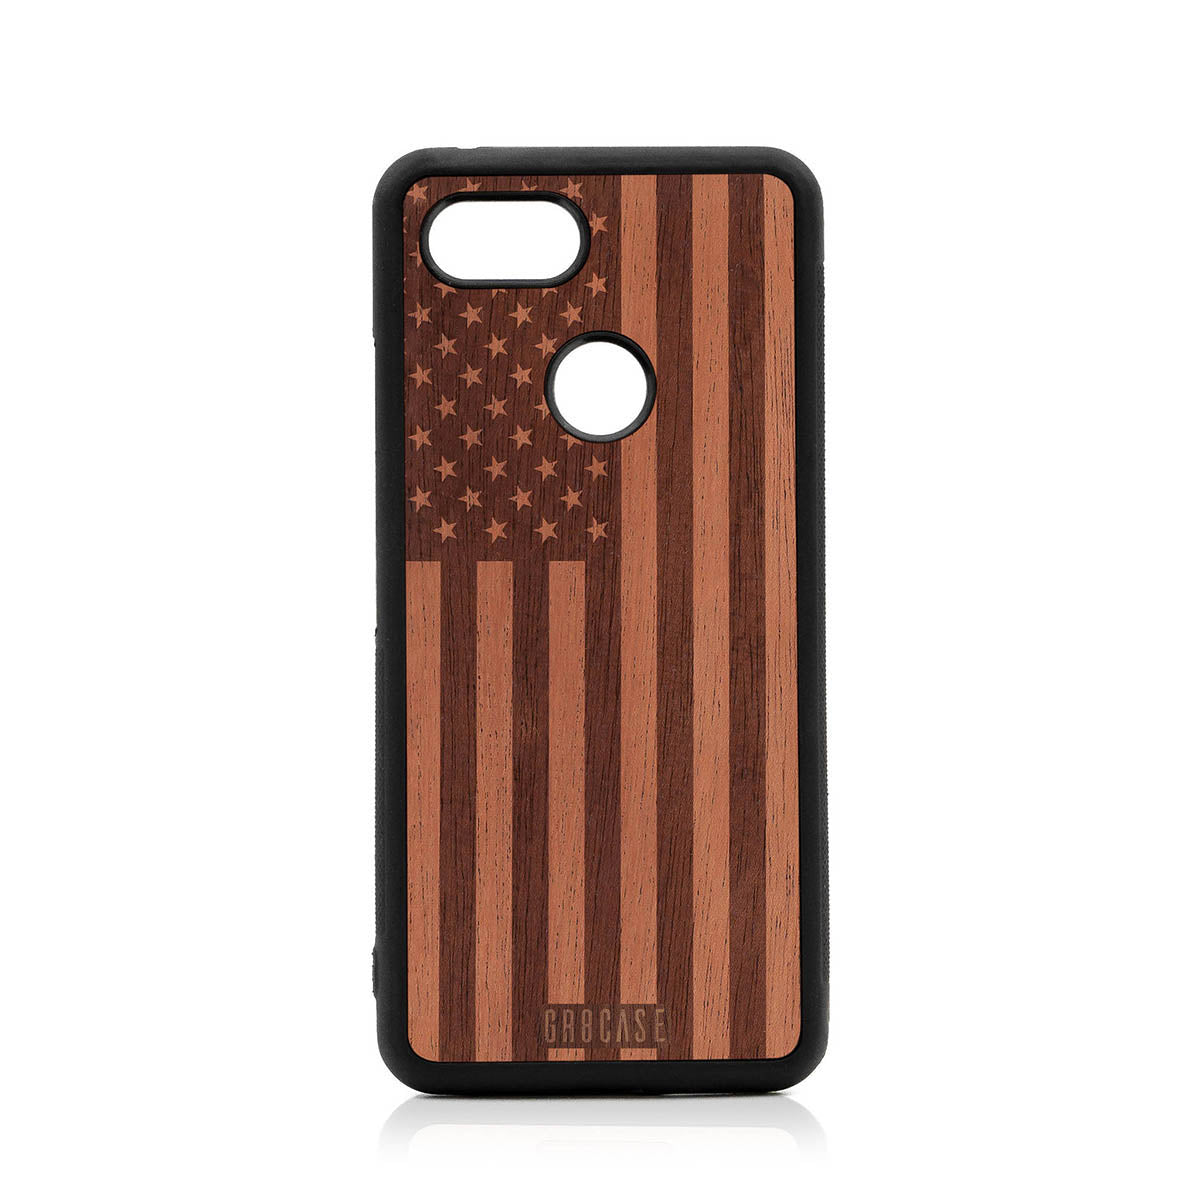 USA Flag Design Wood Case Google Pixel 3